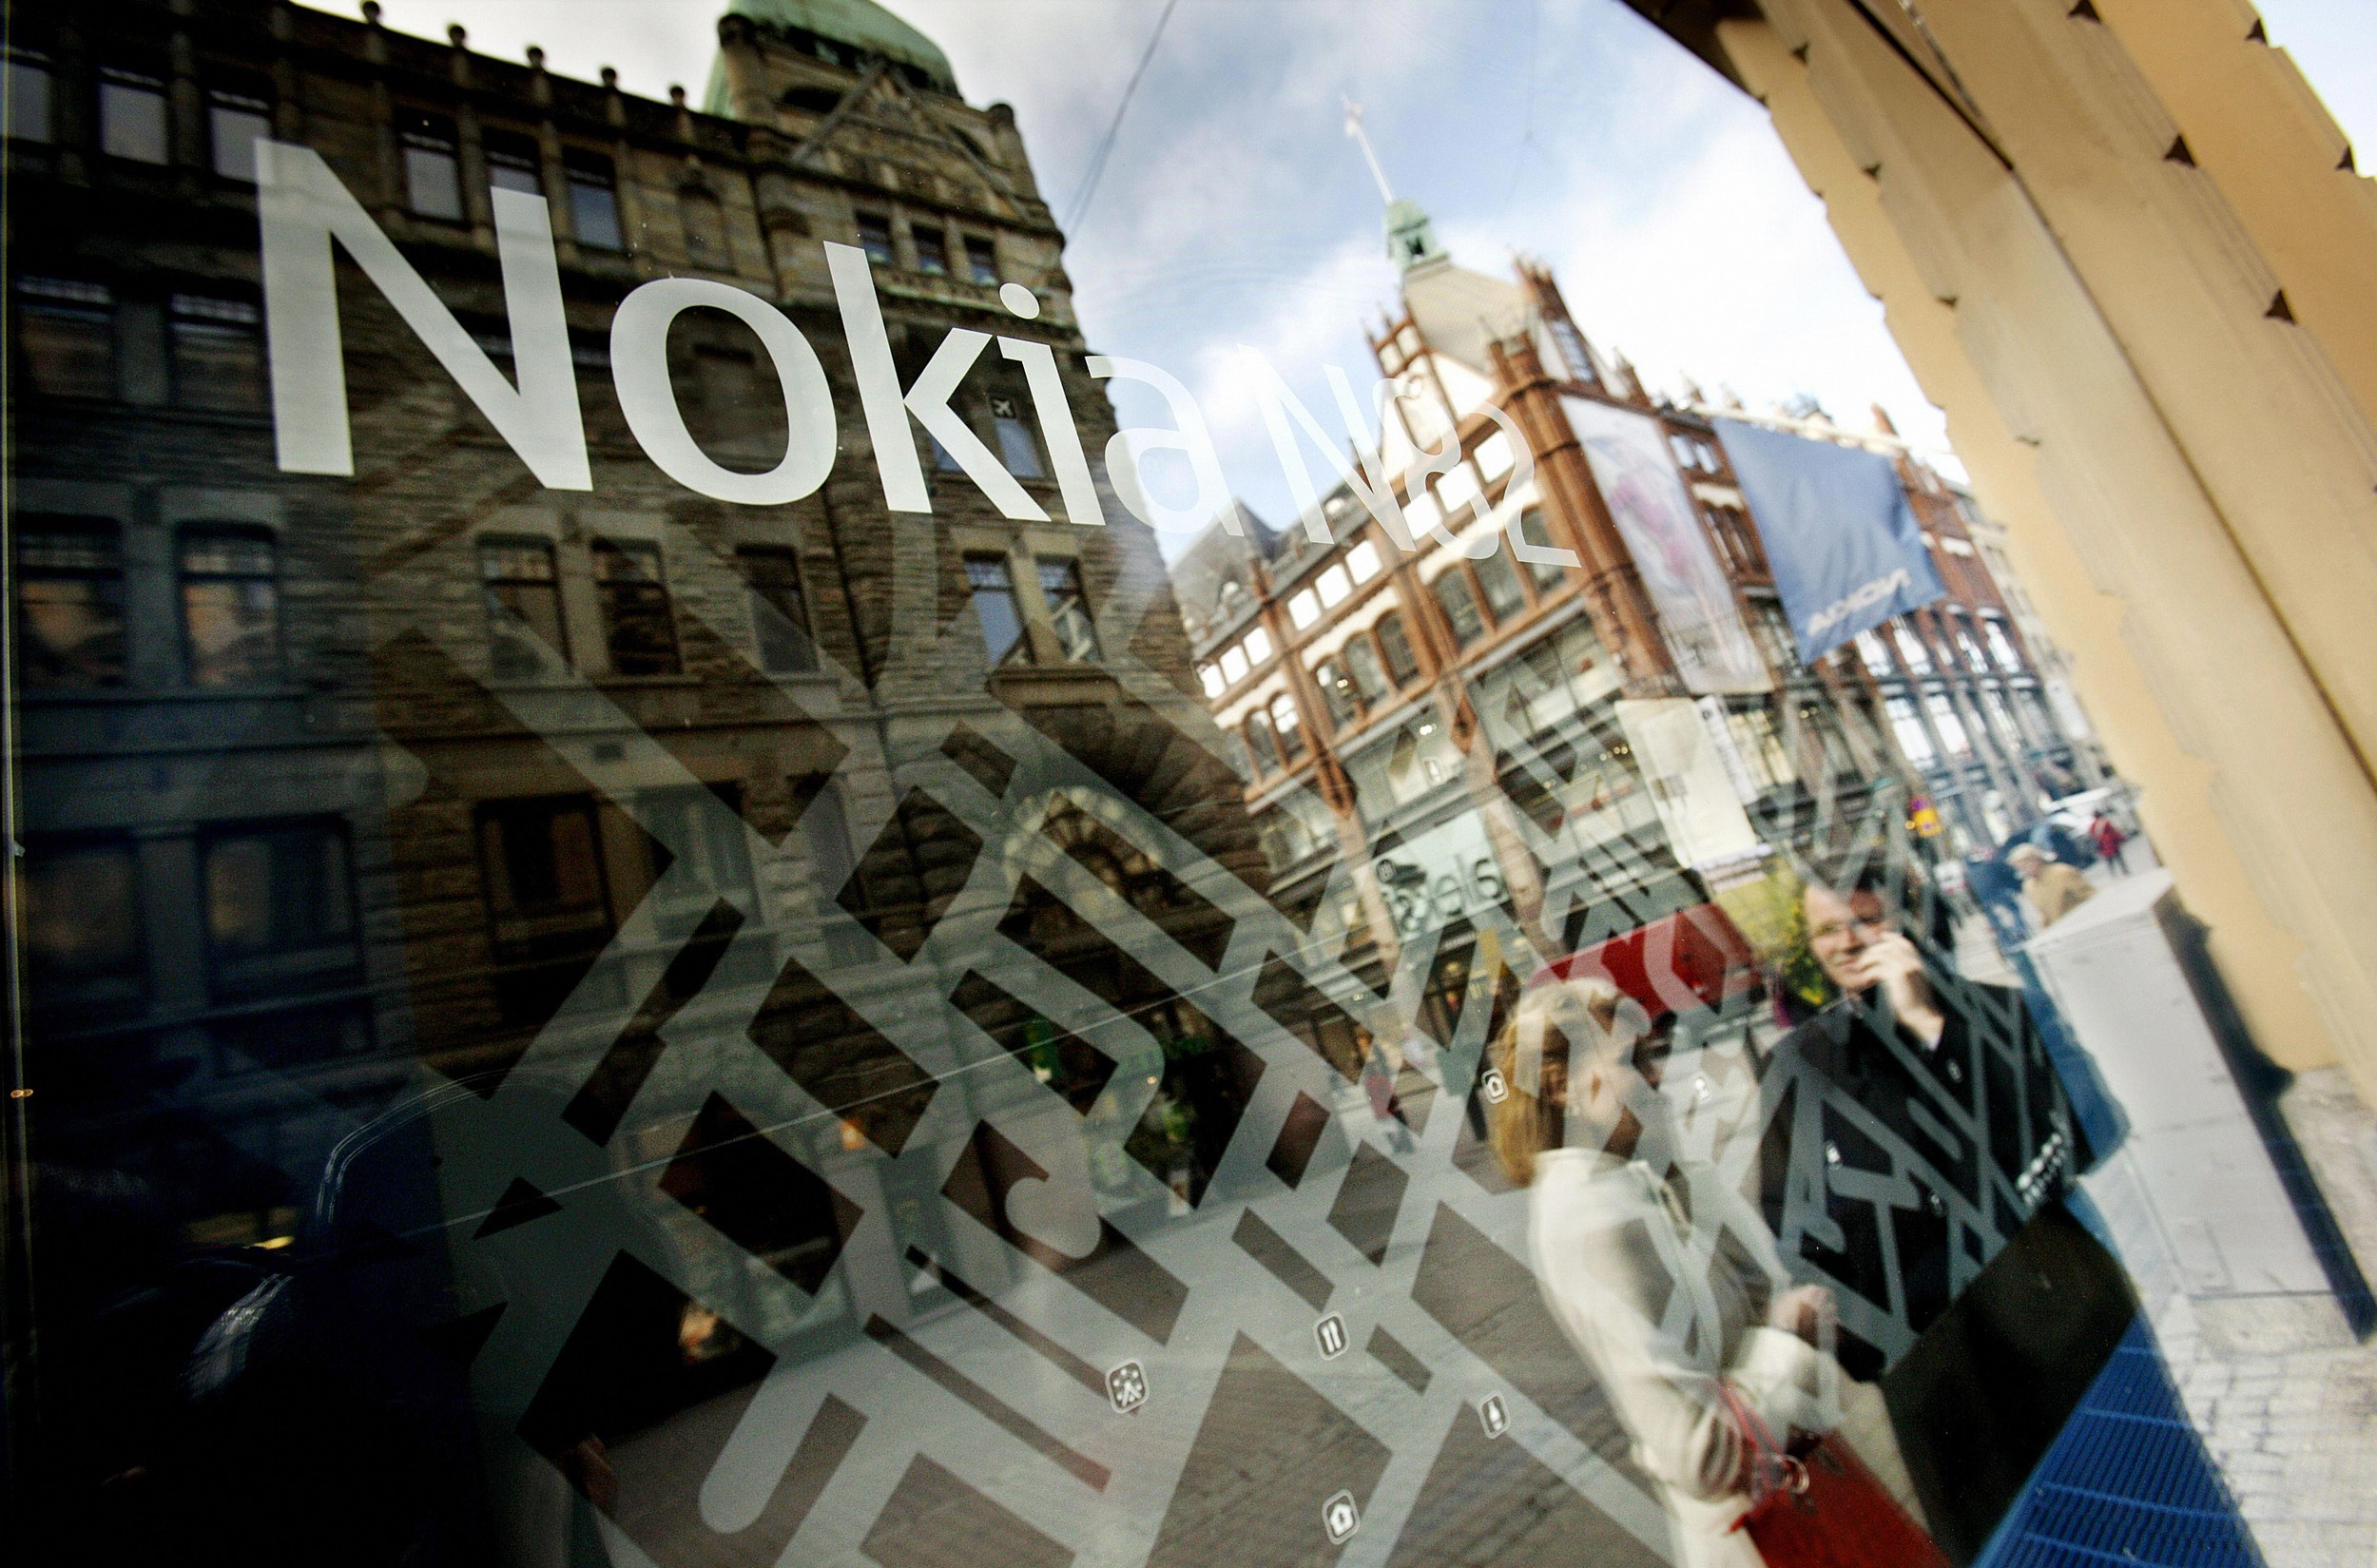 2008年各国的繁荣指标由芬兰取得世界第一。图为两名女性站在芬兰首都赫尔辛基Nokia旗舰店窗前。